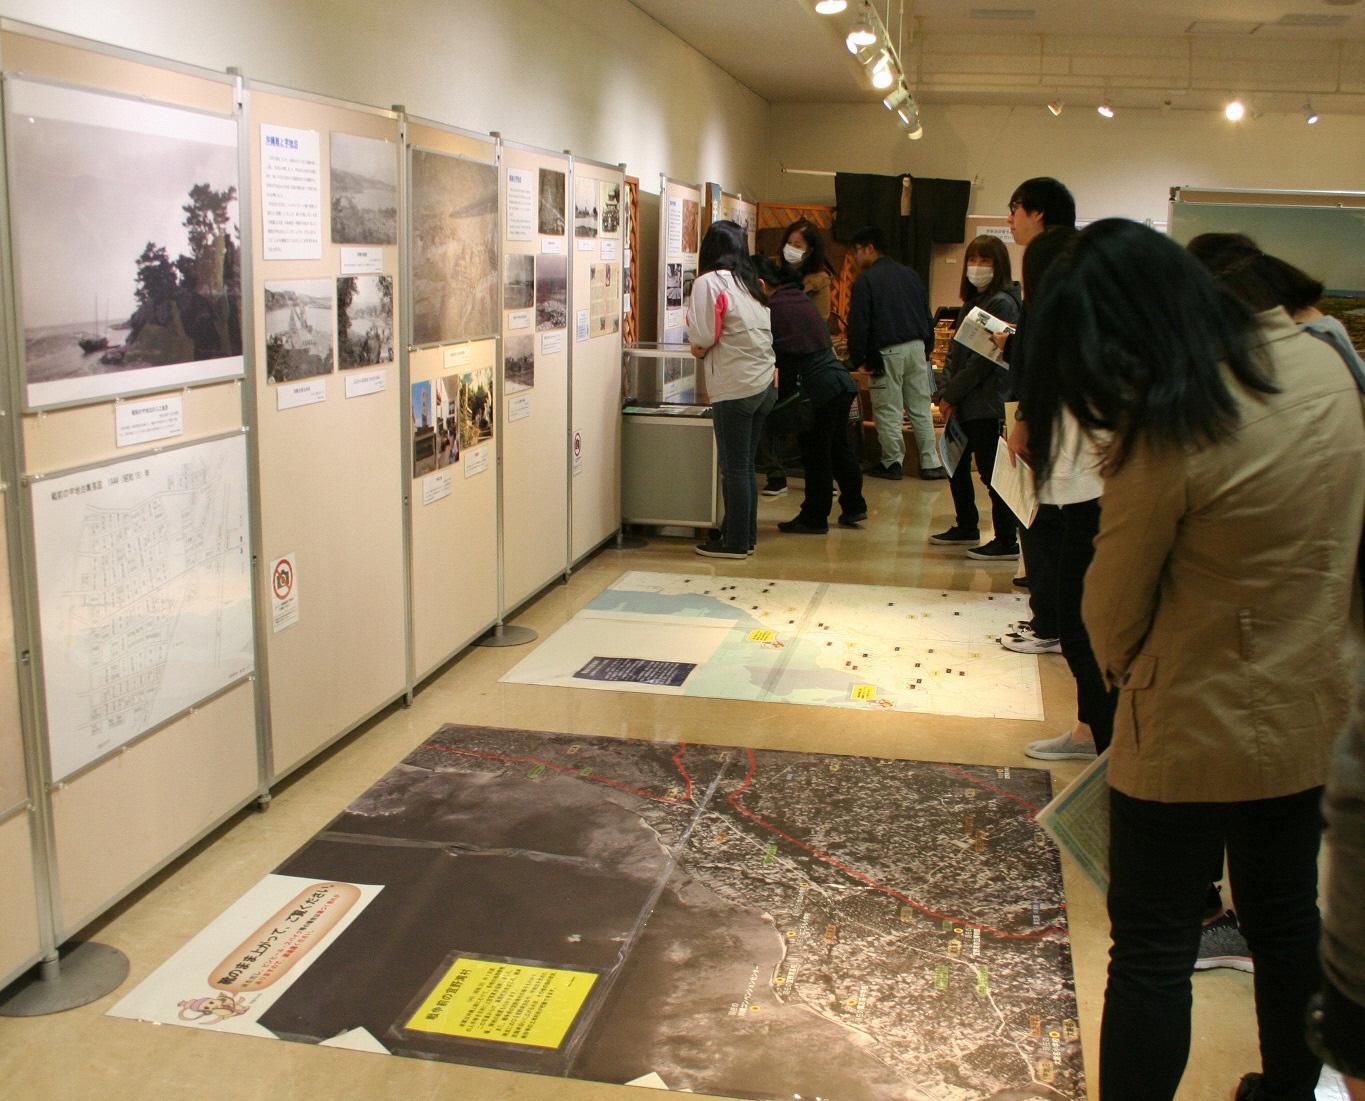 展示室の床に貼られた2枚の地図を見学をしている来場者の写真